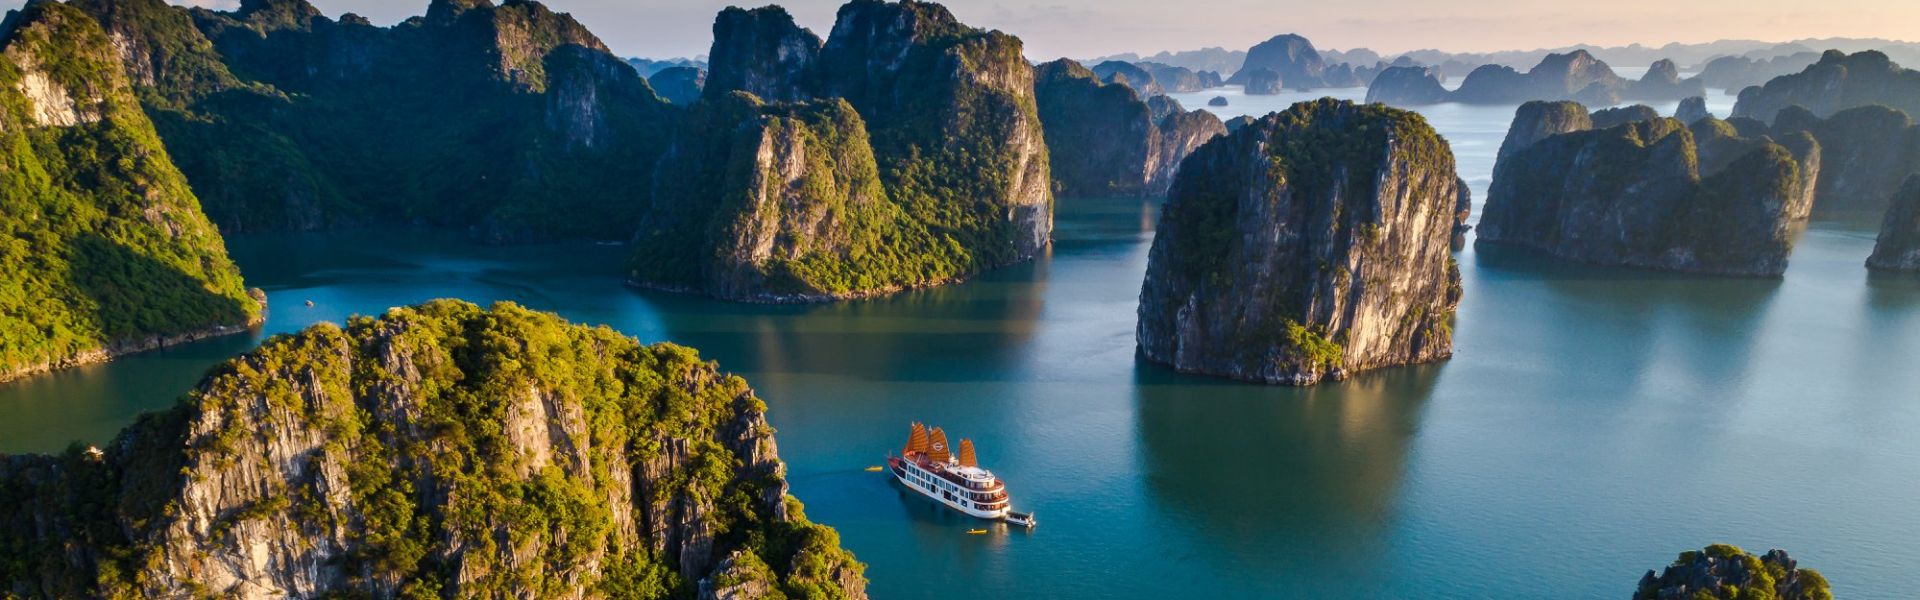 12 migliori consigli per primo viaggio in Vietnam